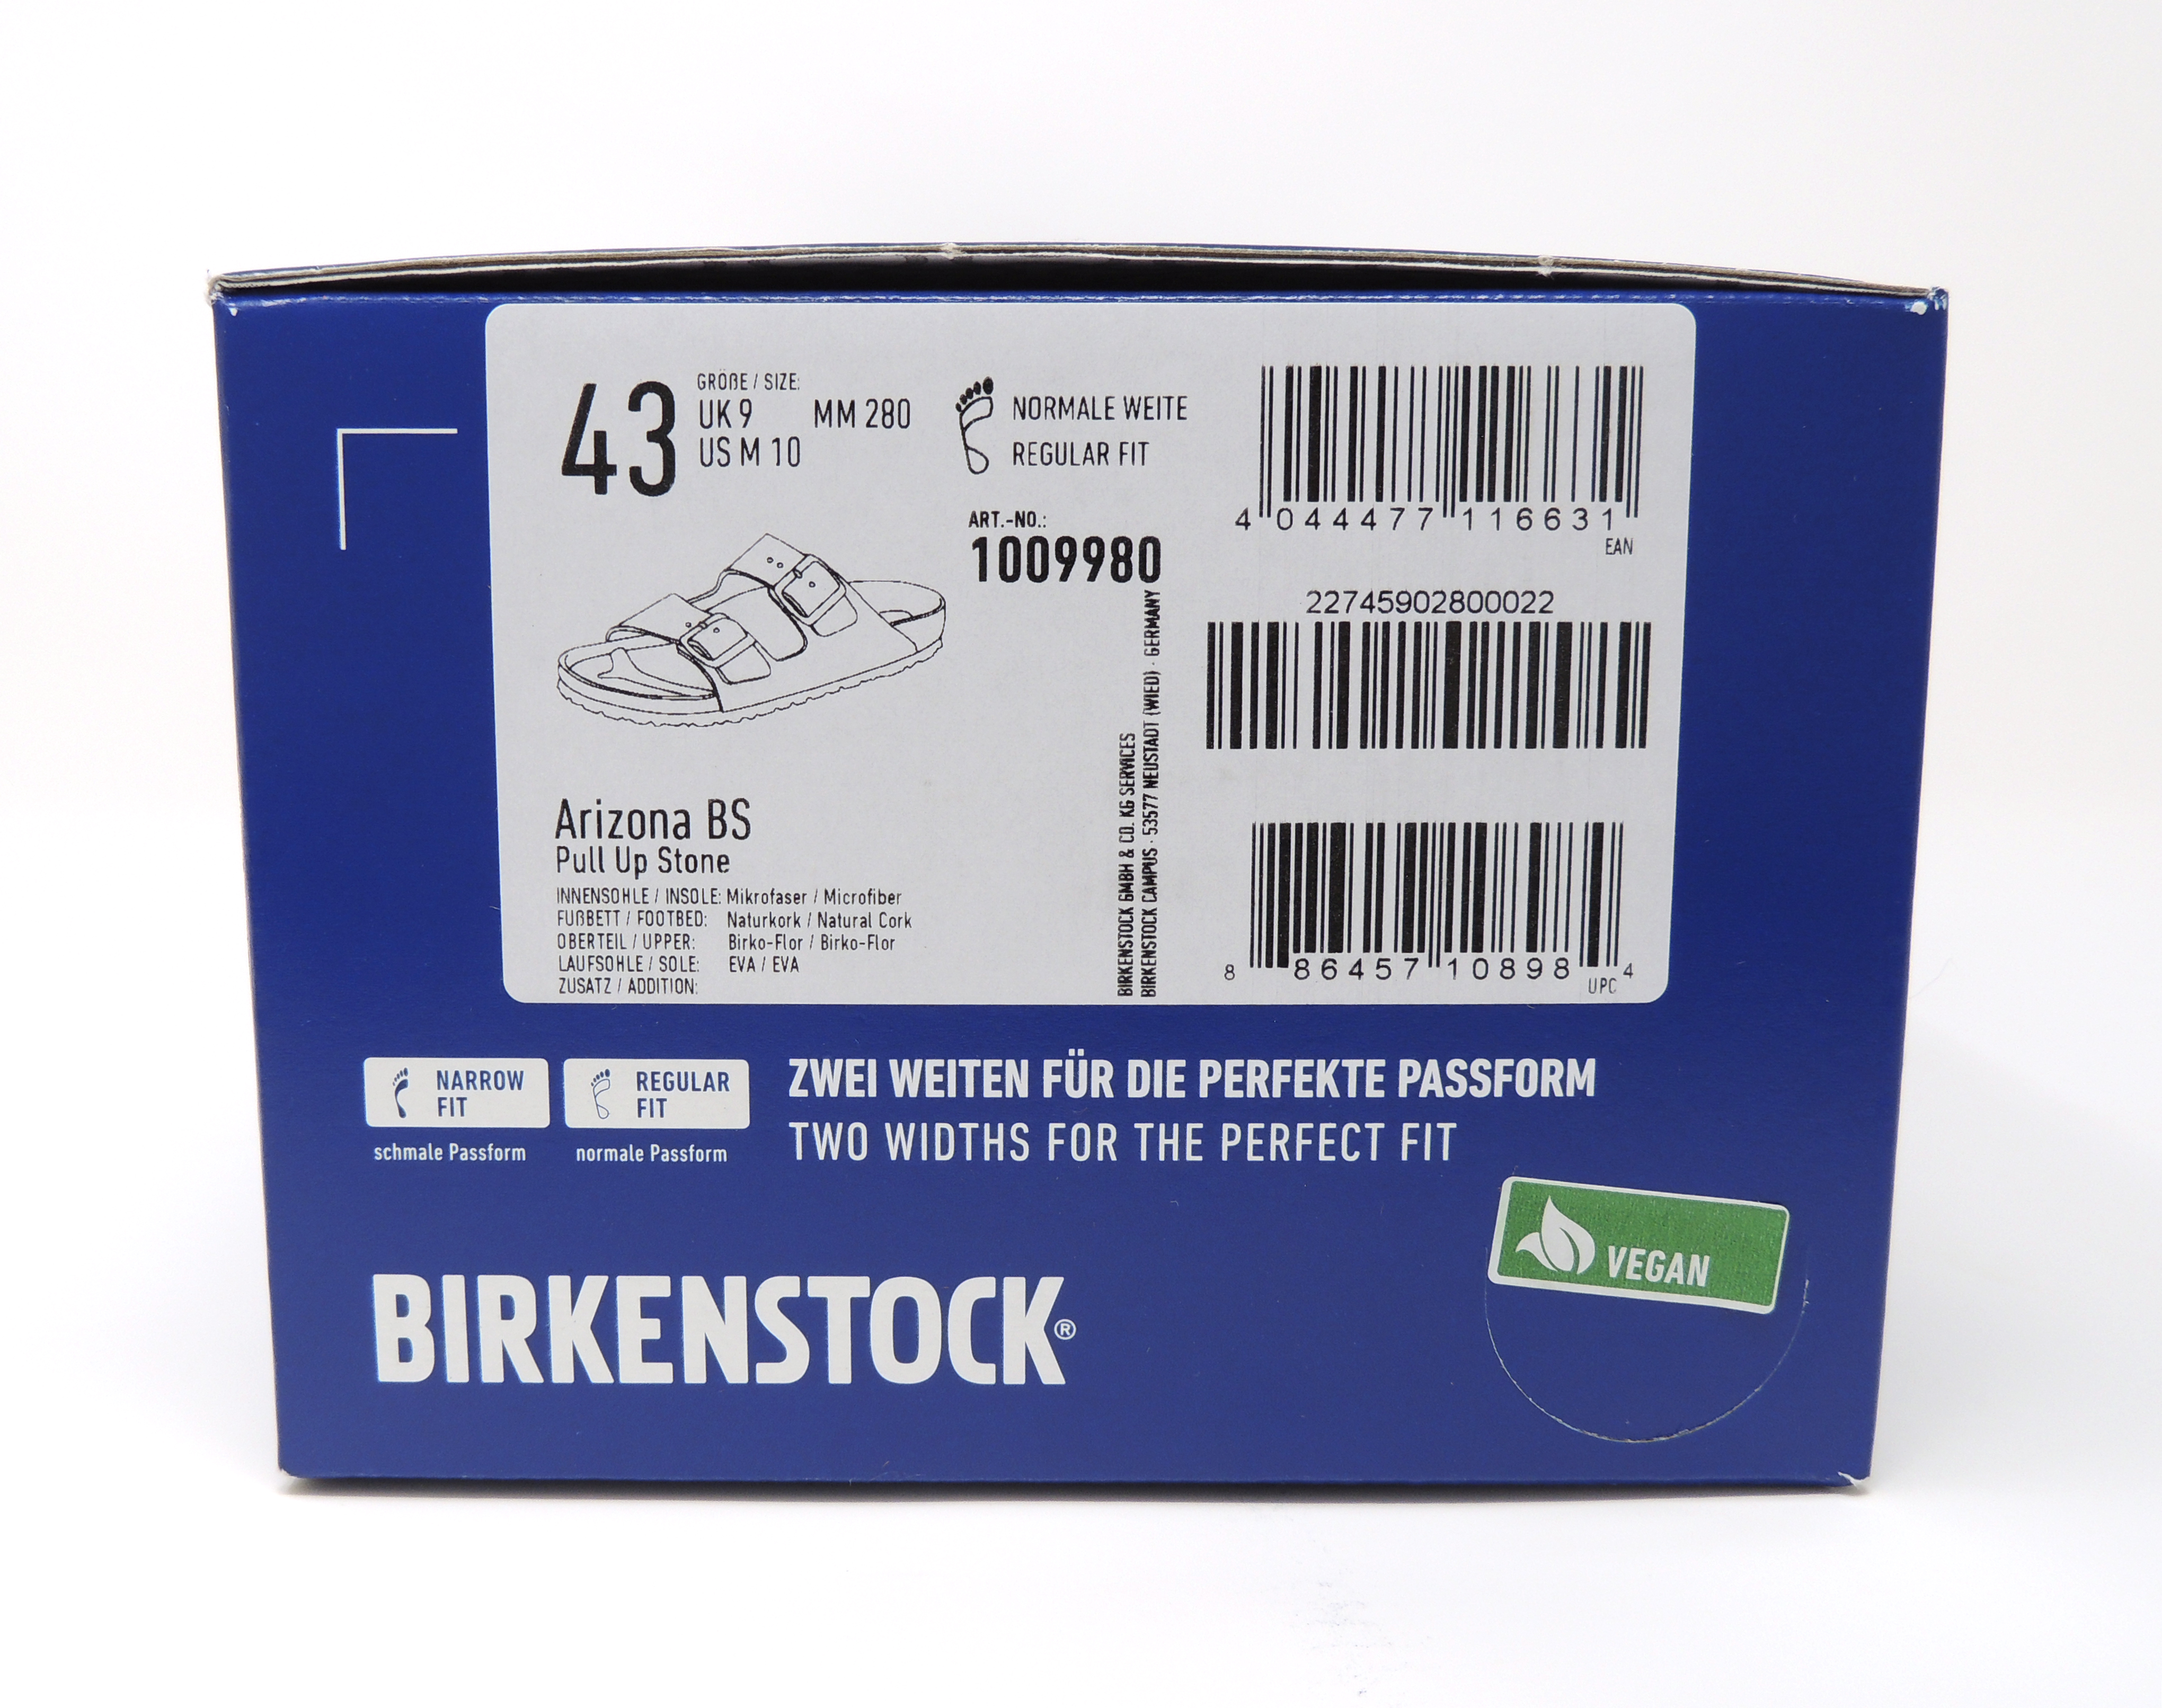 birkenstock authorized online retailers